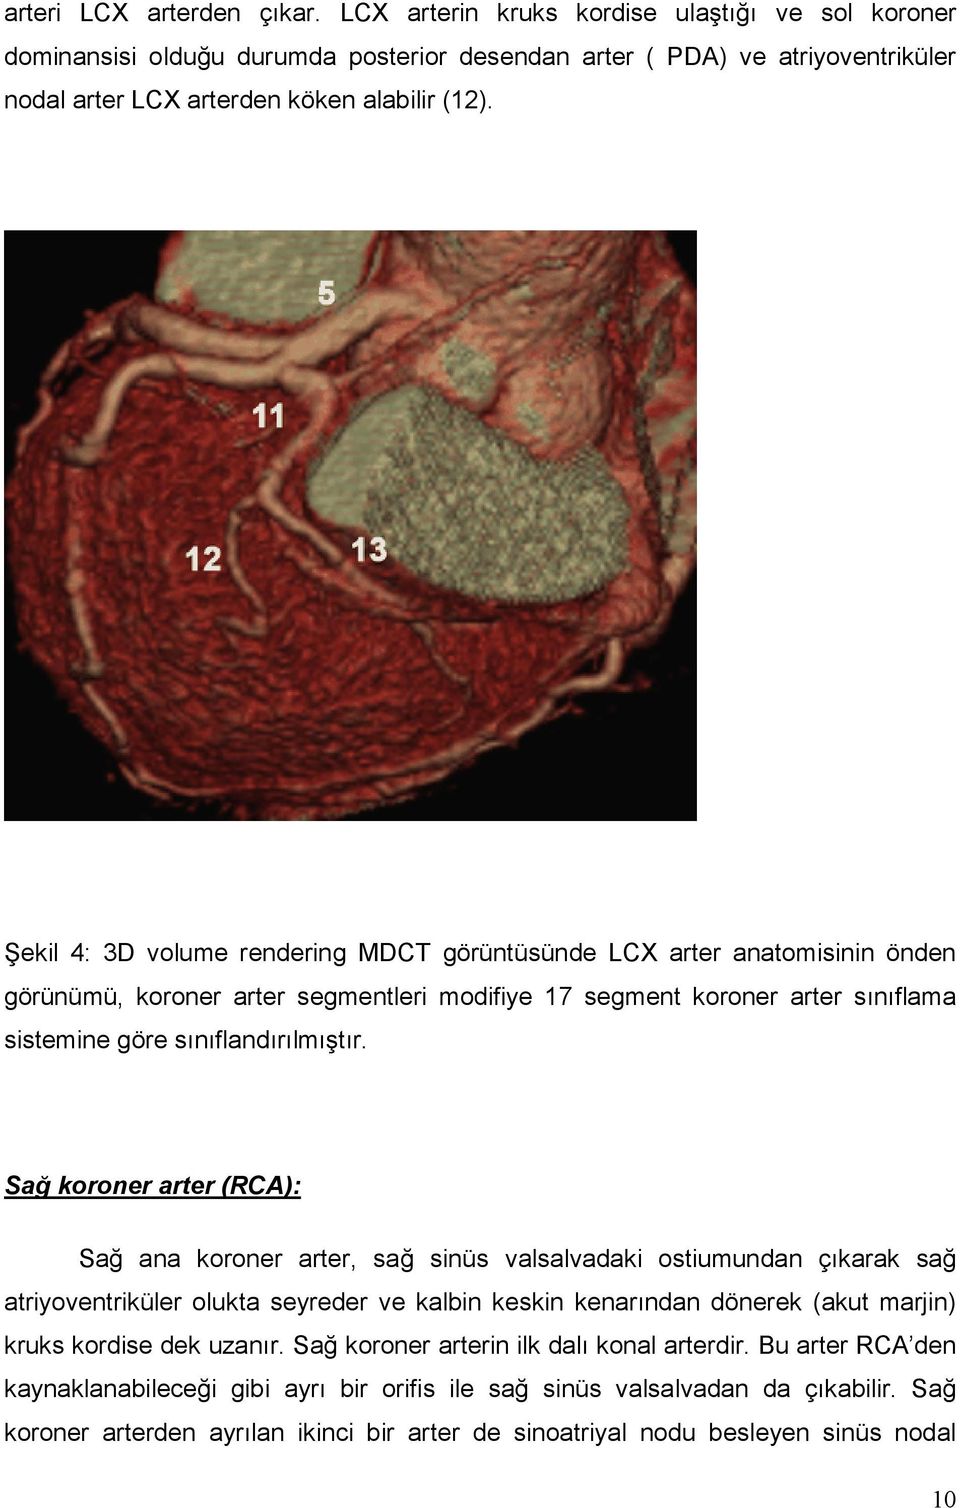 Şekil 4: 3D volume rendering MDCT görüntüsünde LCX arter anatomisinin önden görünümü, koroner arter segmentleri modifiye 17 segment koroner arter sınıflama sistemine göre sınıflandırılmıştır.